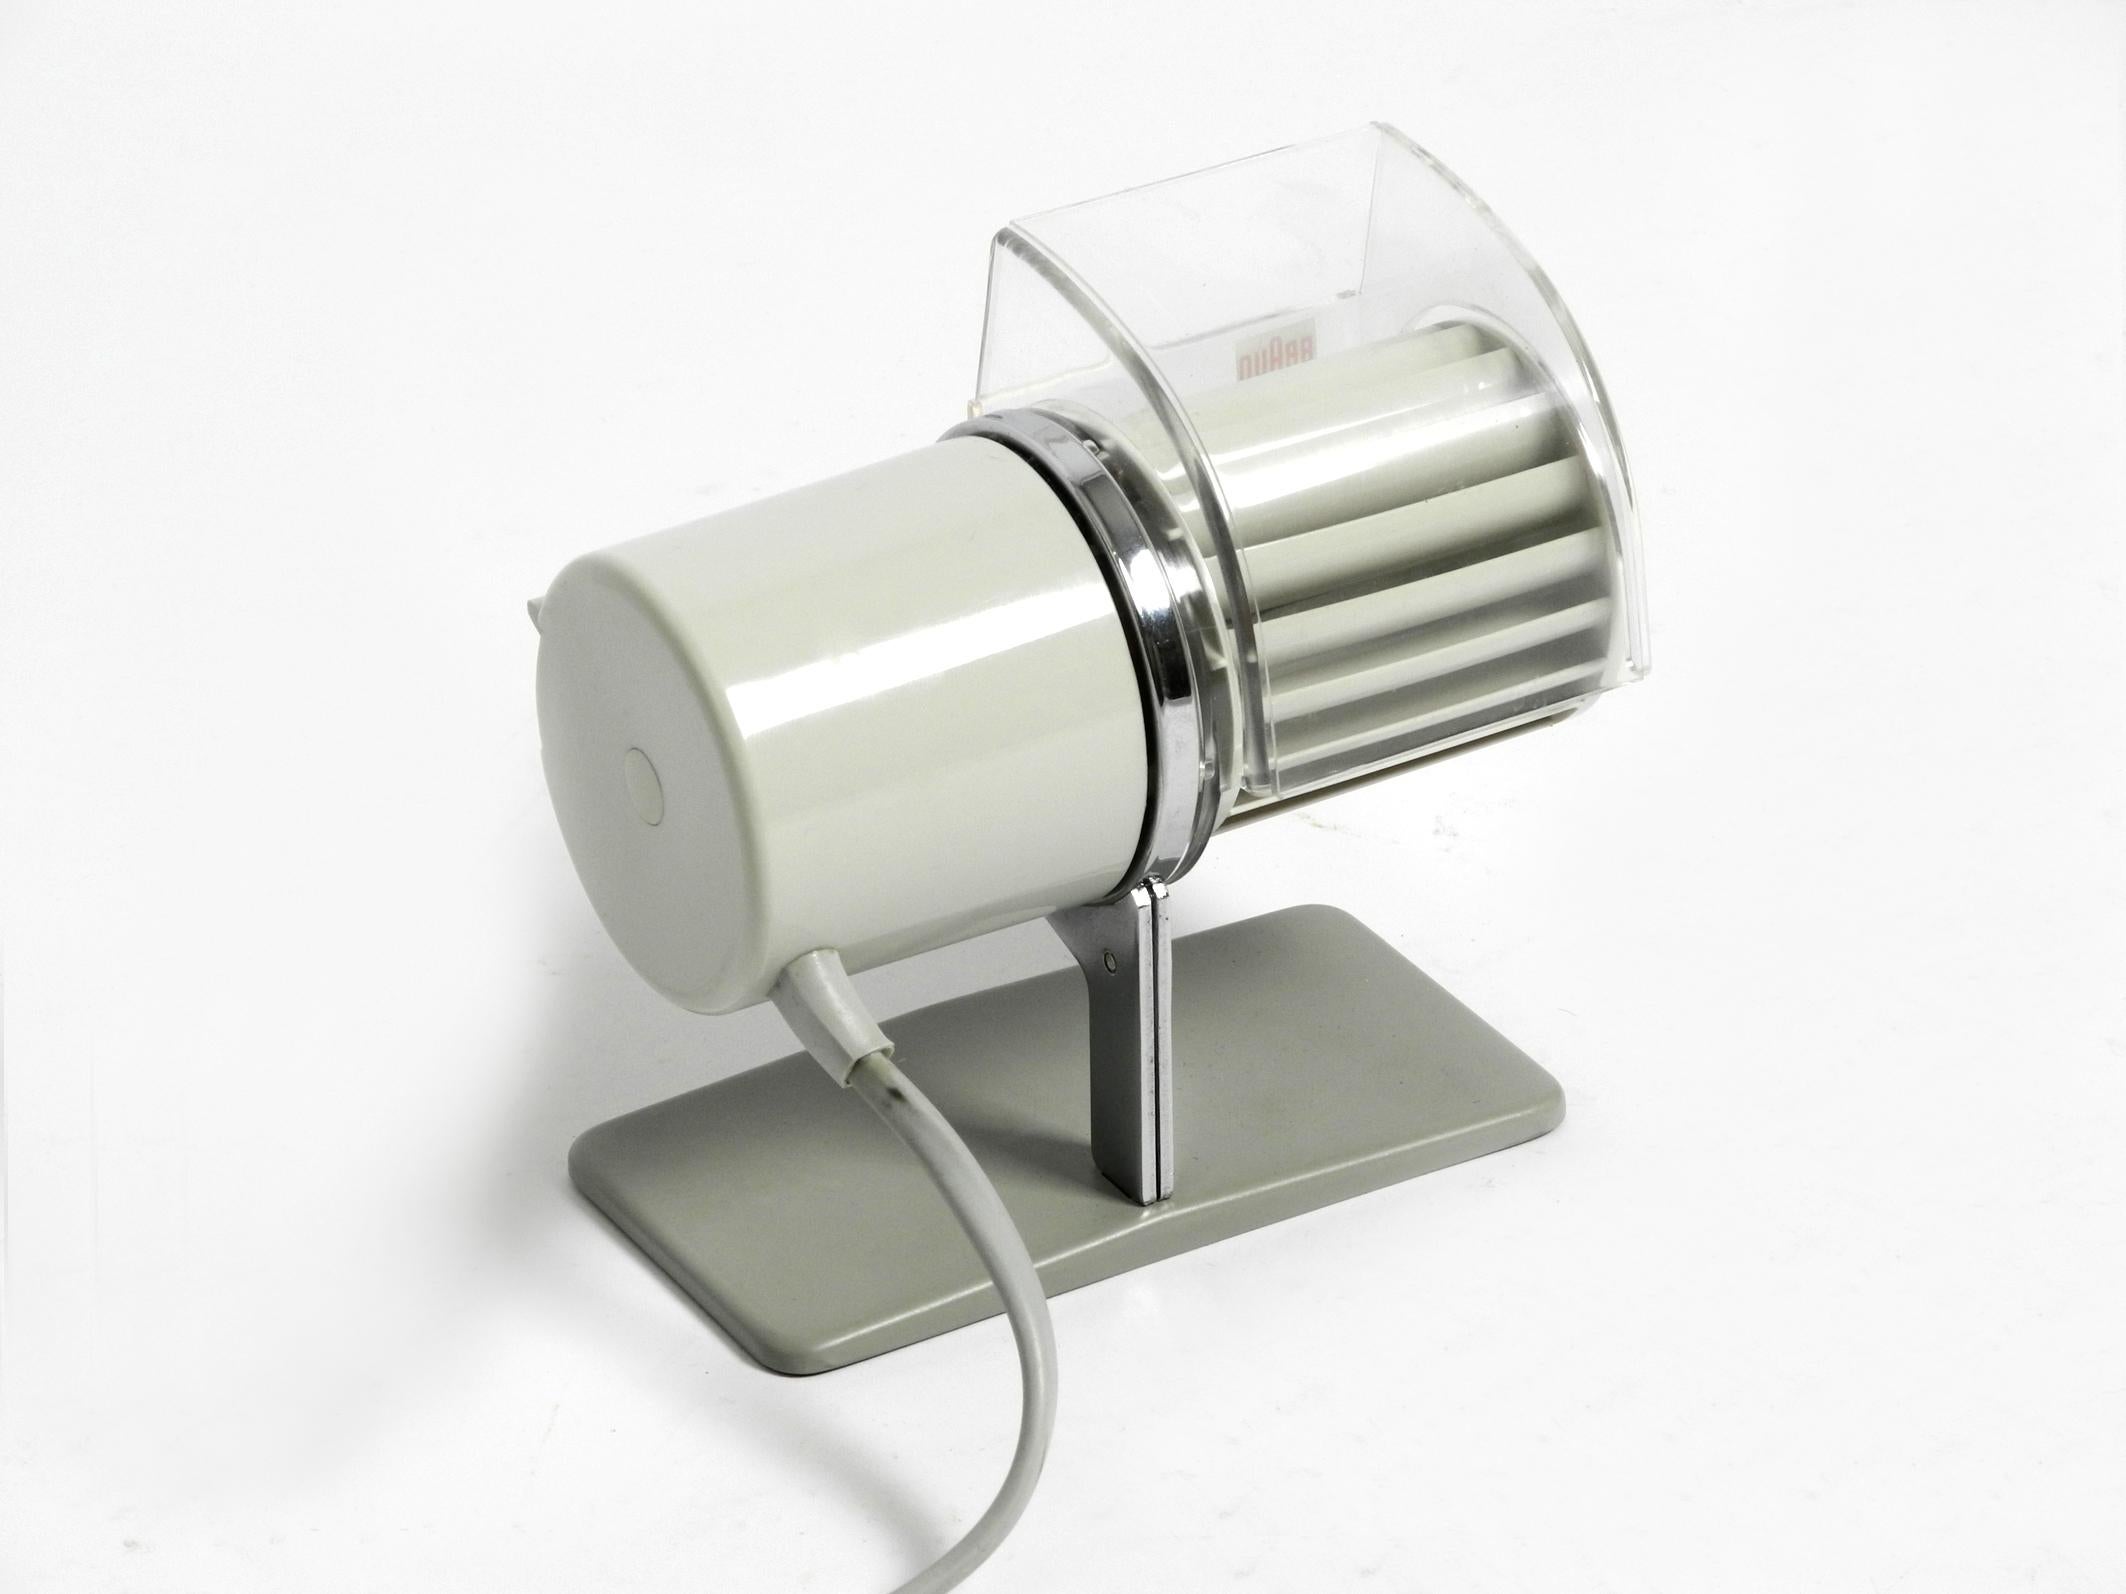 Ventilateur de table HL 1 original de Braun datant de 1961.
Design/One : Reinhold Weiss. Fabriqué en Allemagne de l'Ouest
La sortie d'air peut être tournée en continu. 2 niveaux. Le montage mural est également possible, grâce aux crochets d'origine